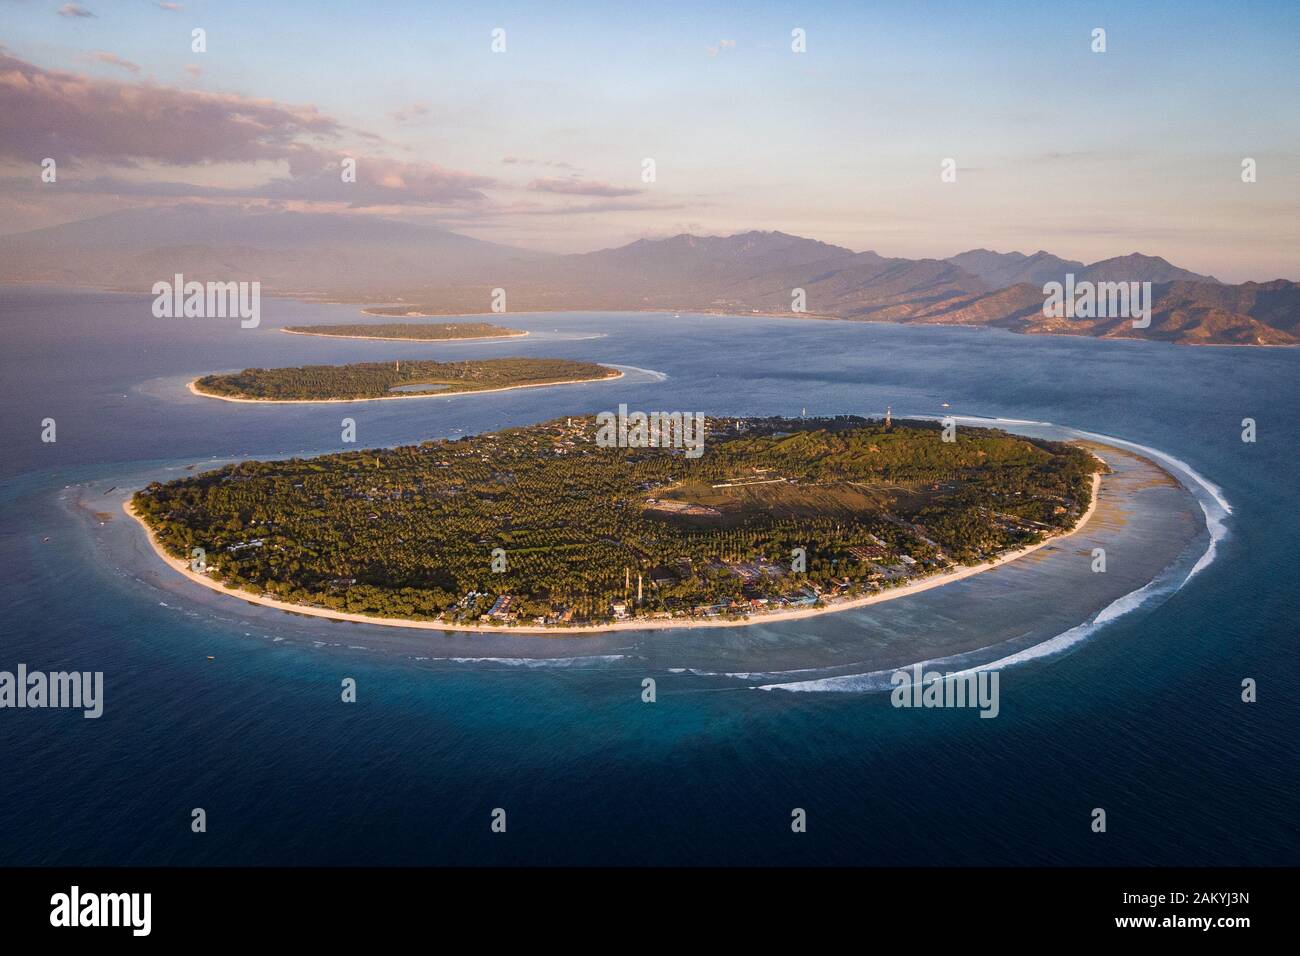 Vista aérea de las islas Gili frente a la costa de Lombok, Indonesia, al atardecer. Los Gilis son el destino turístico más popular de Lombok. Foto de stock